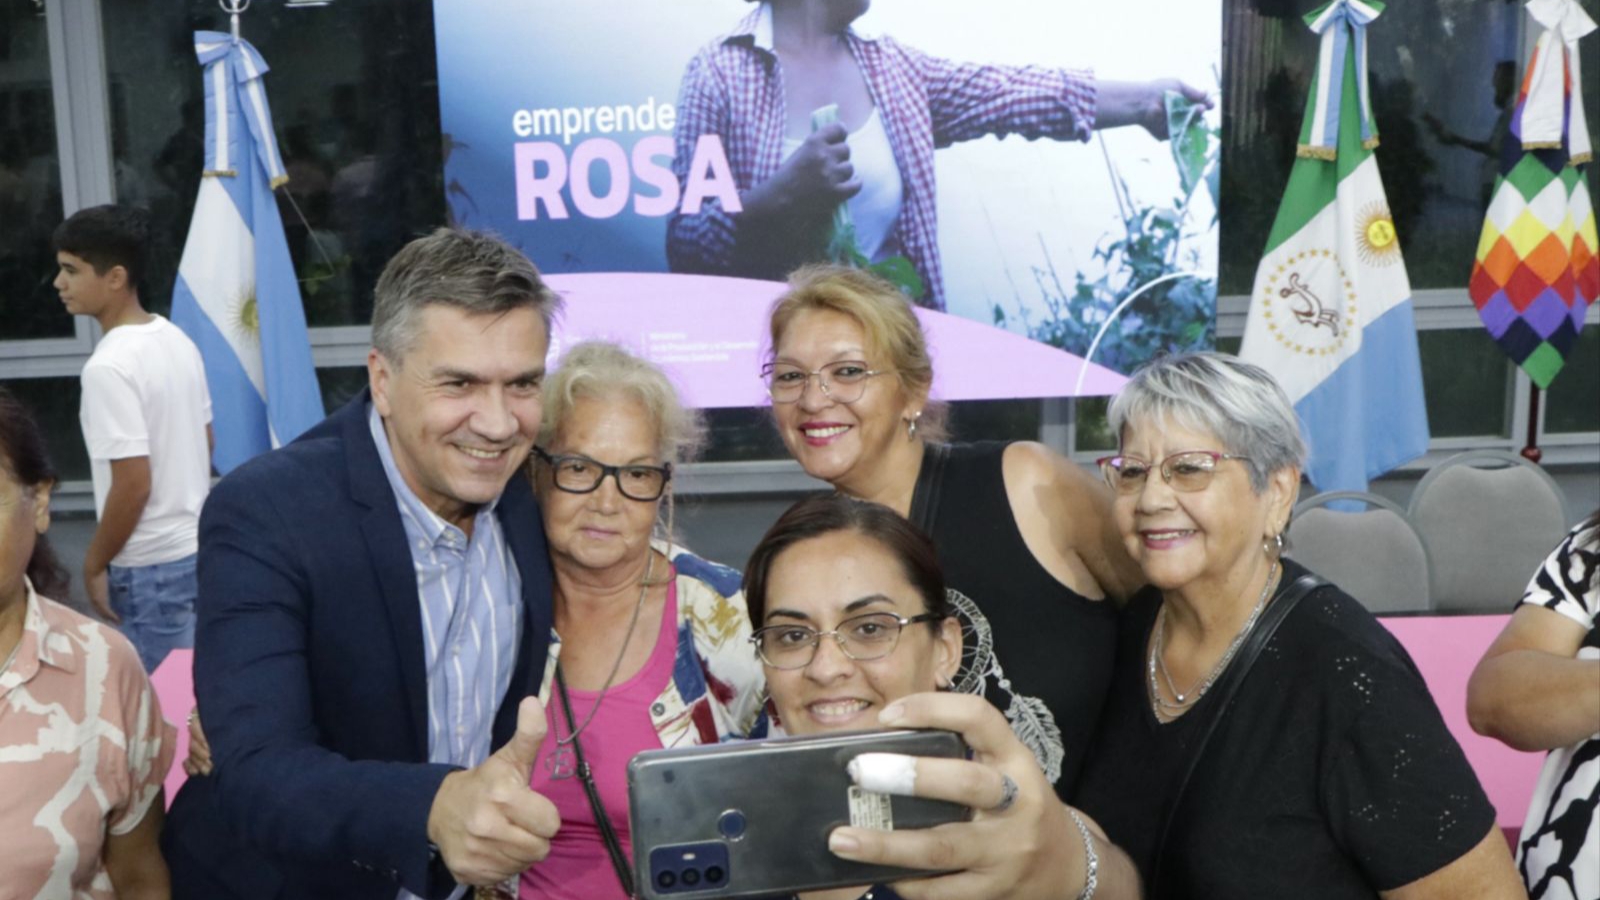 El Gobernador lanzo "Emprende Rosa" una herramienta financiera destinada a emprendedoras